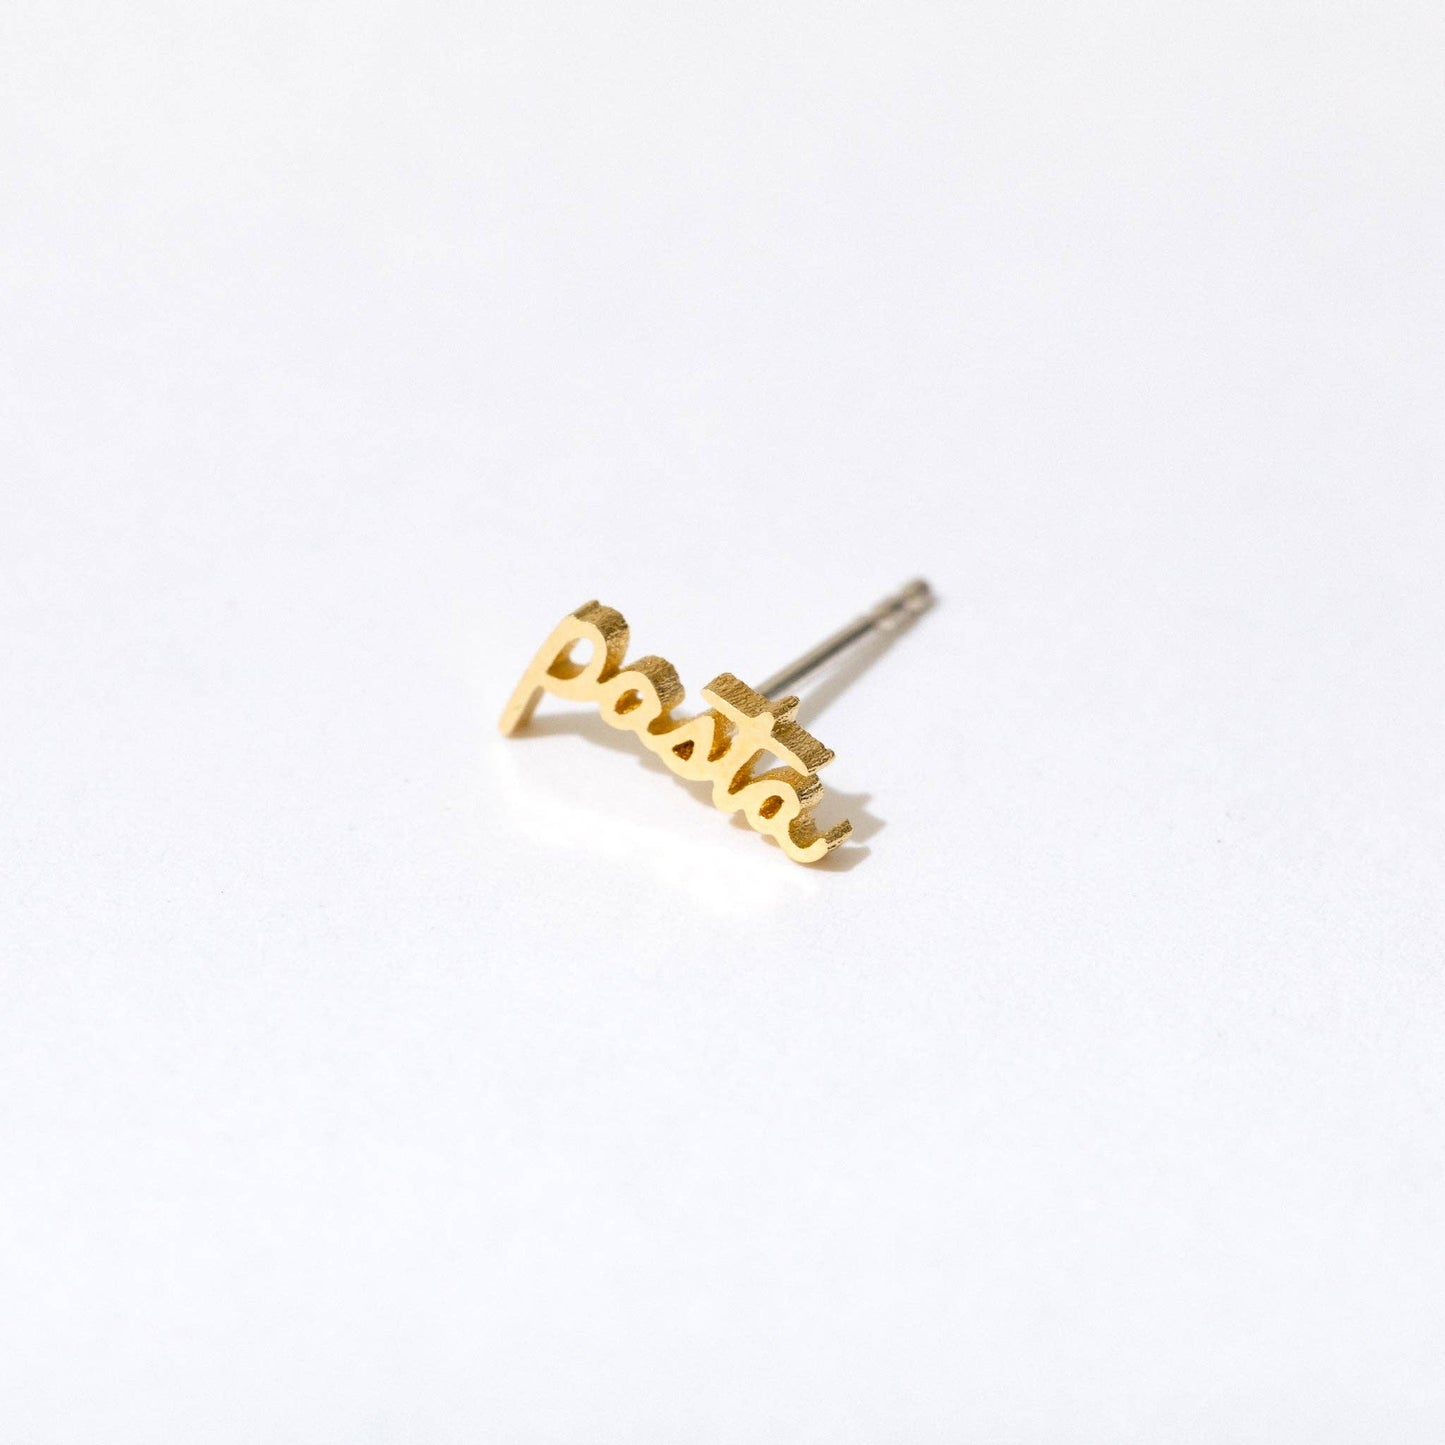 Single 14k gold plated stud earring -- reads "pasta" in handwritten script